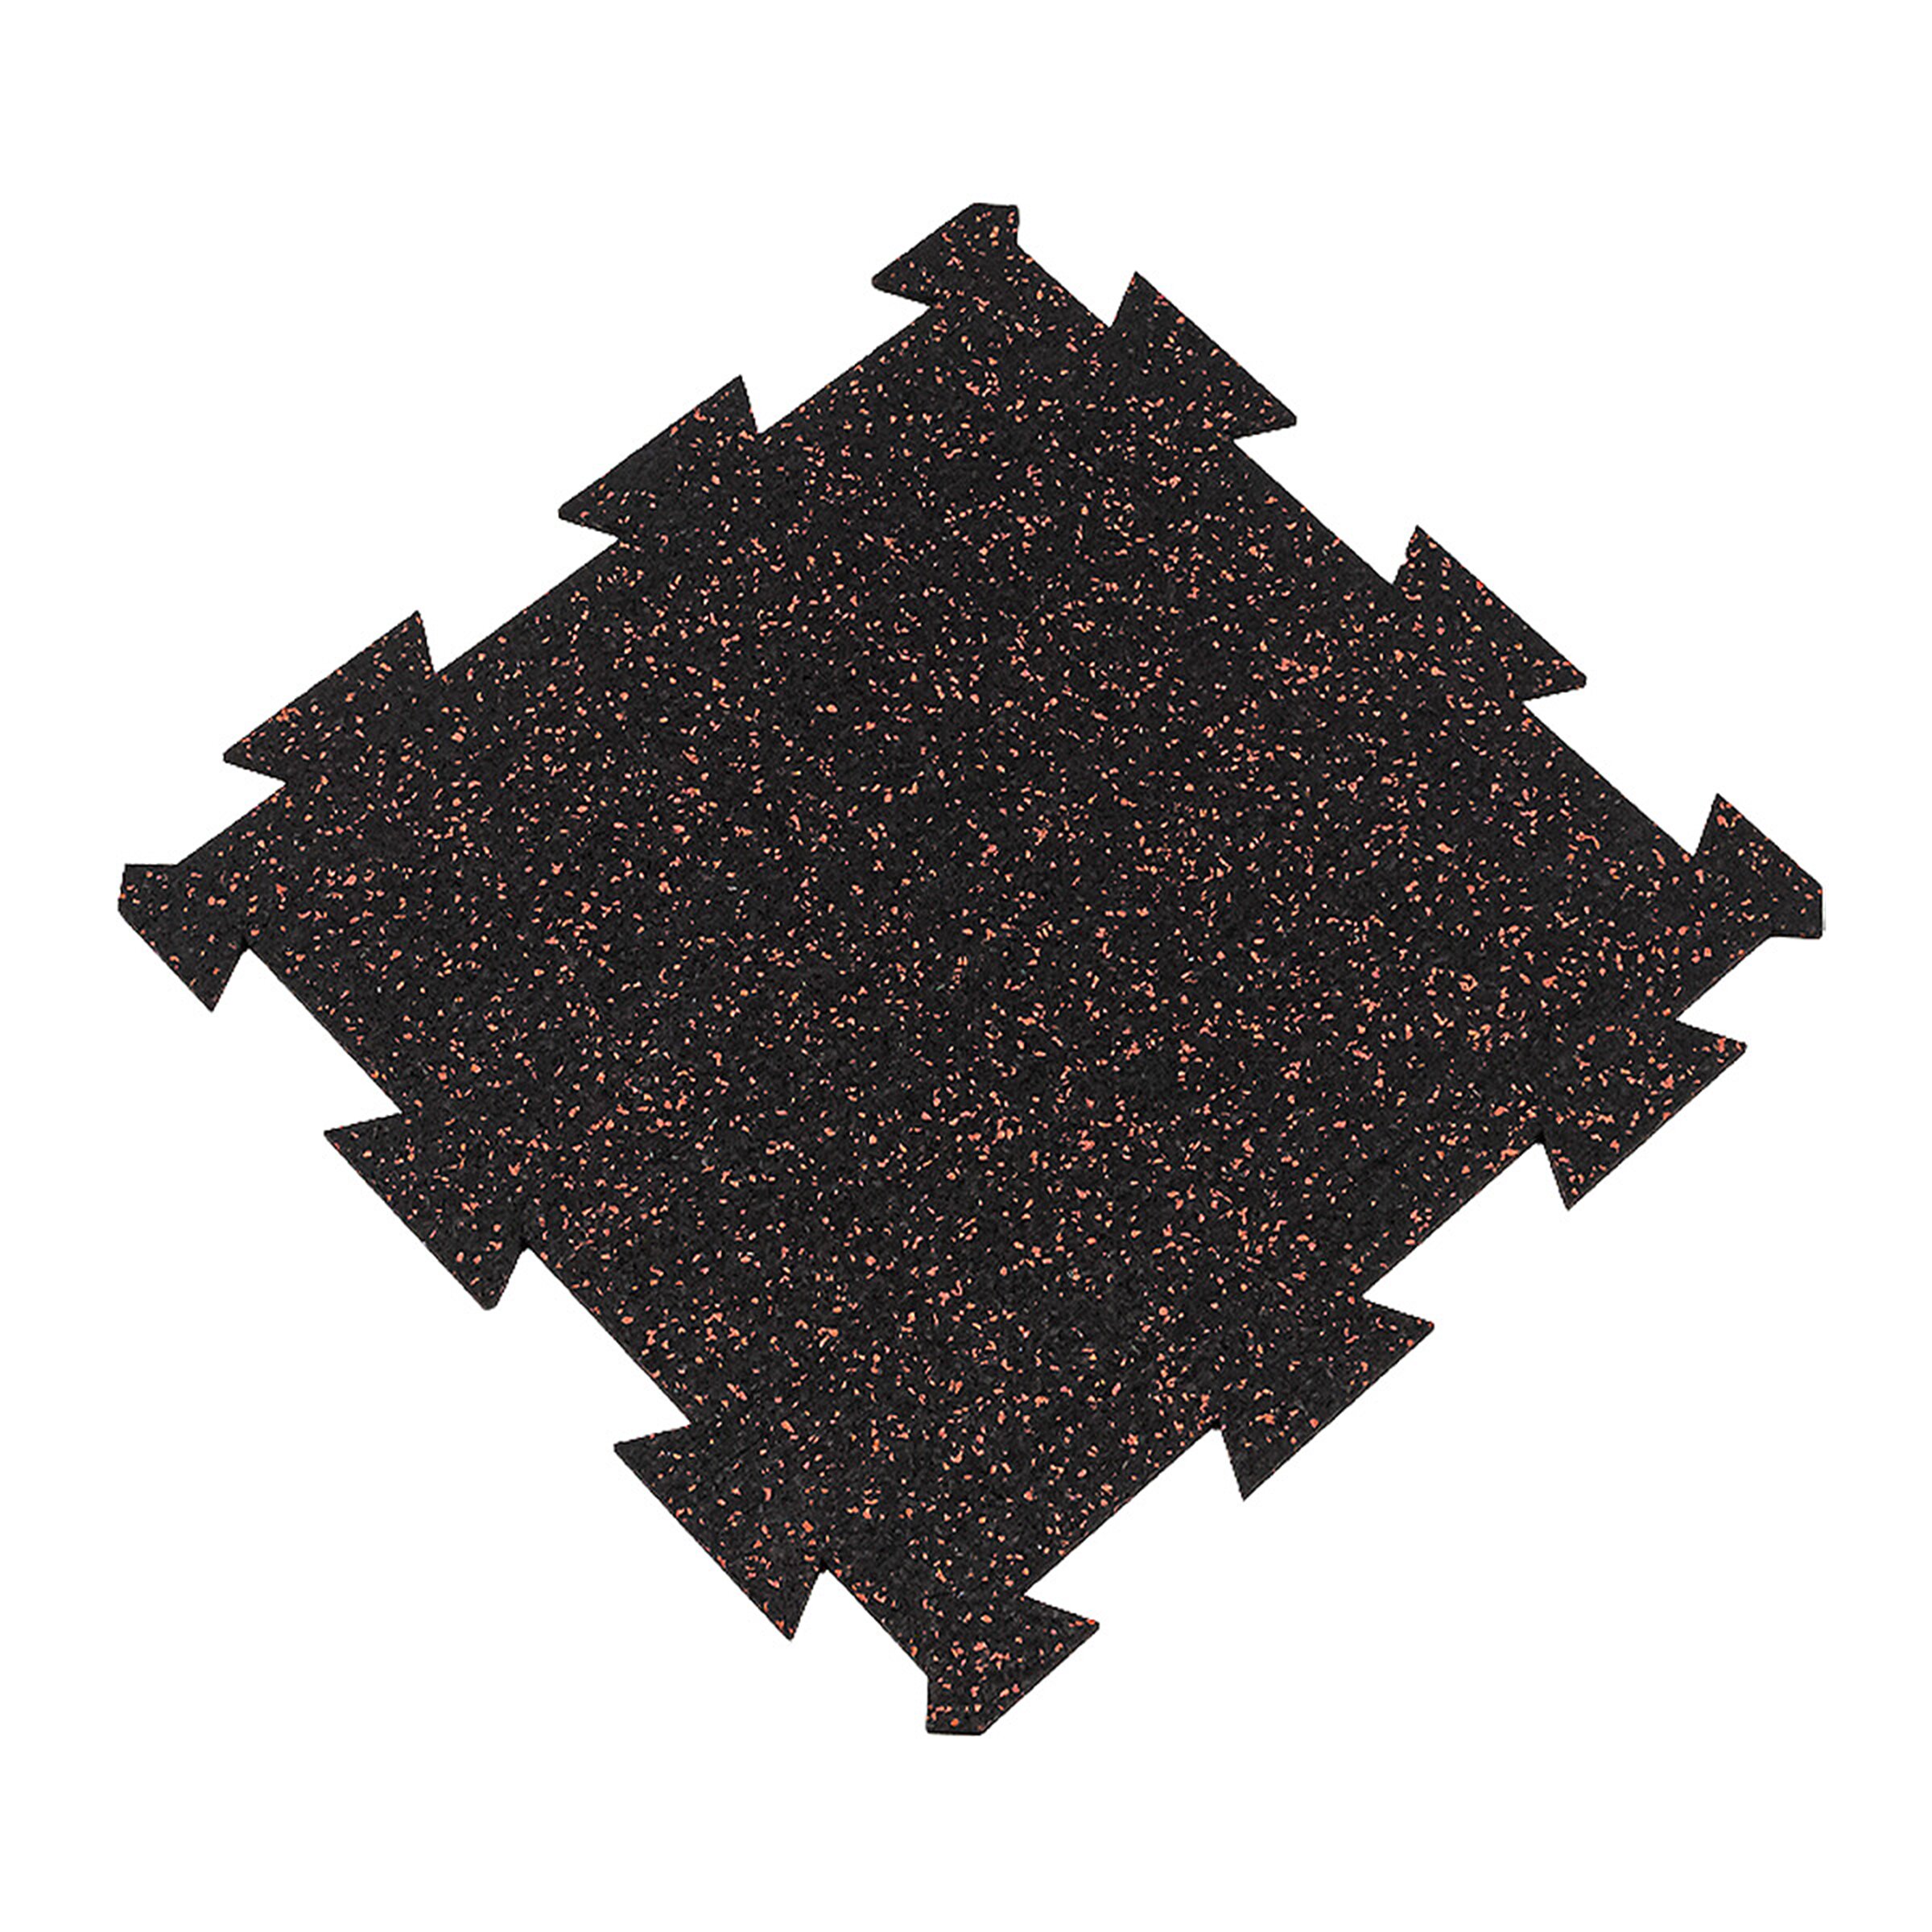 Čierno-červená gumová modulová puzzle dlažba (stred) FLOMA FitFlo SF1050 - dĺžka 50 cm, šírka 50 cm, výška 0,8 cm